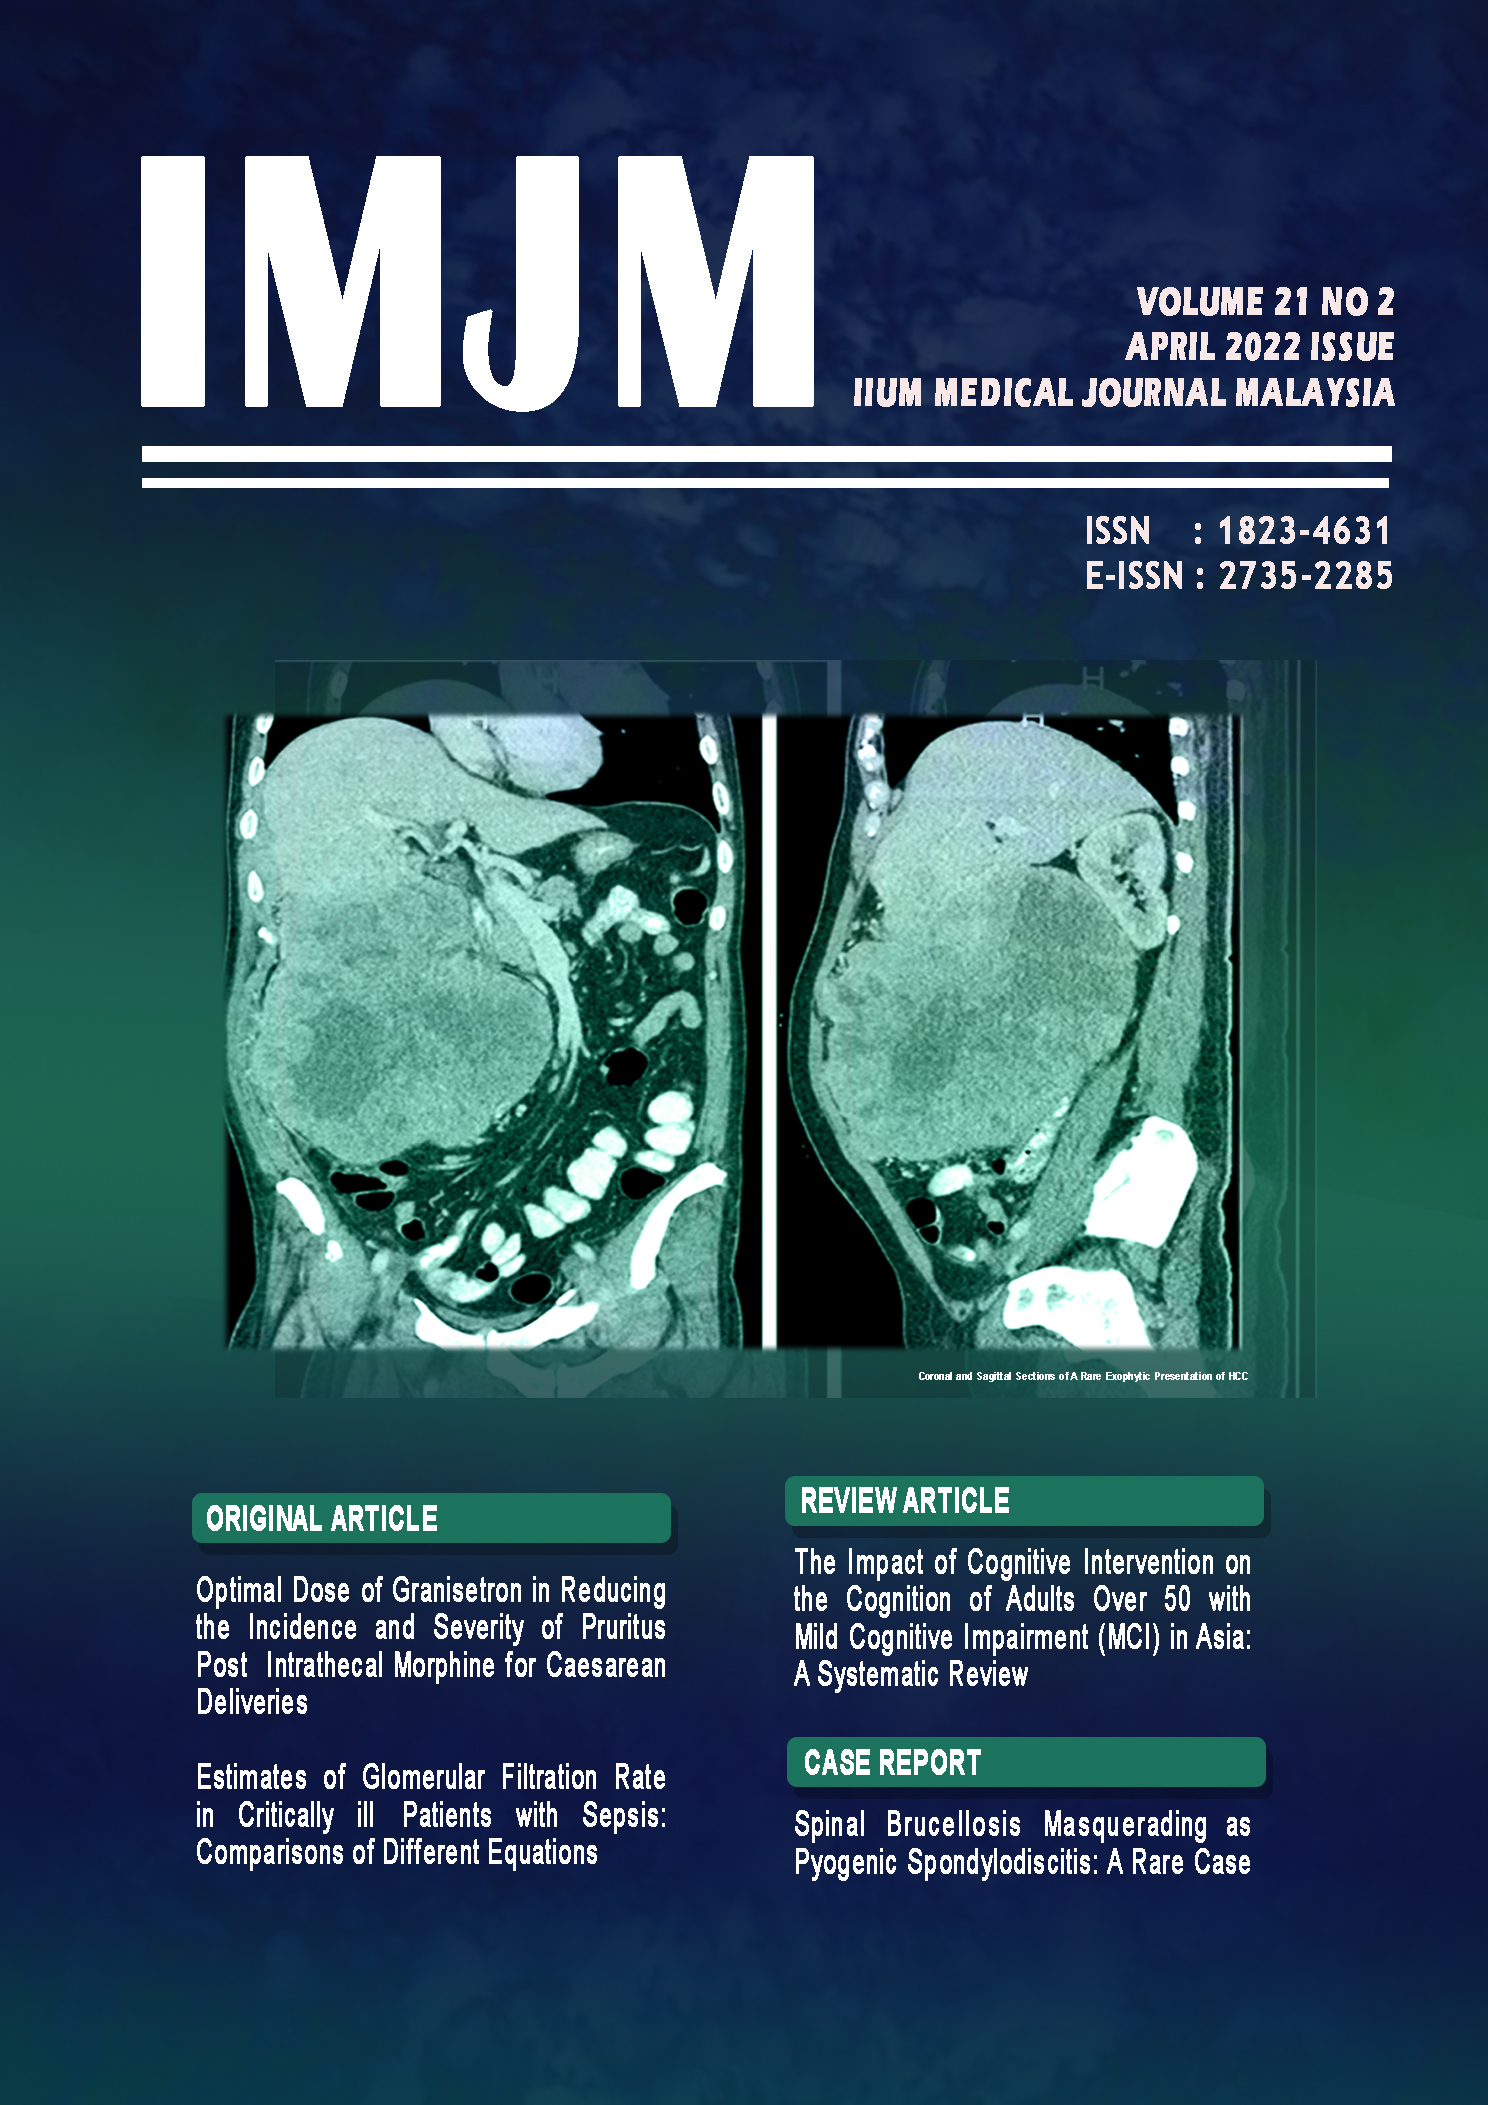 					View Vol. 21 No. 2 (2022): IIUM Medical Journal Malaysia - April 2022
				